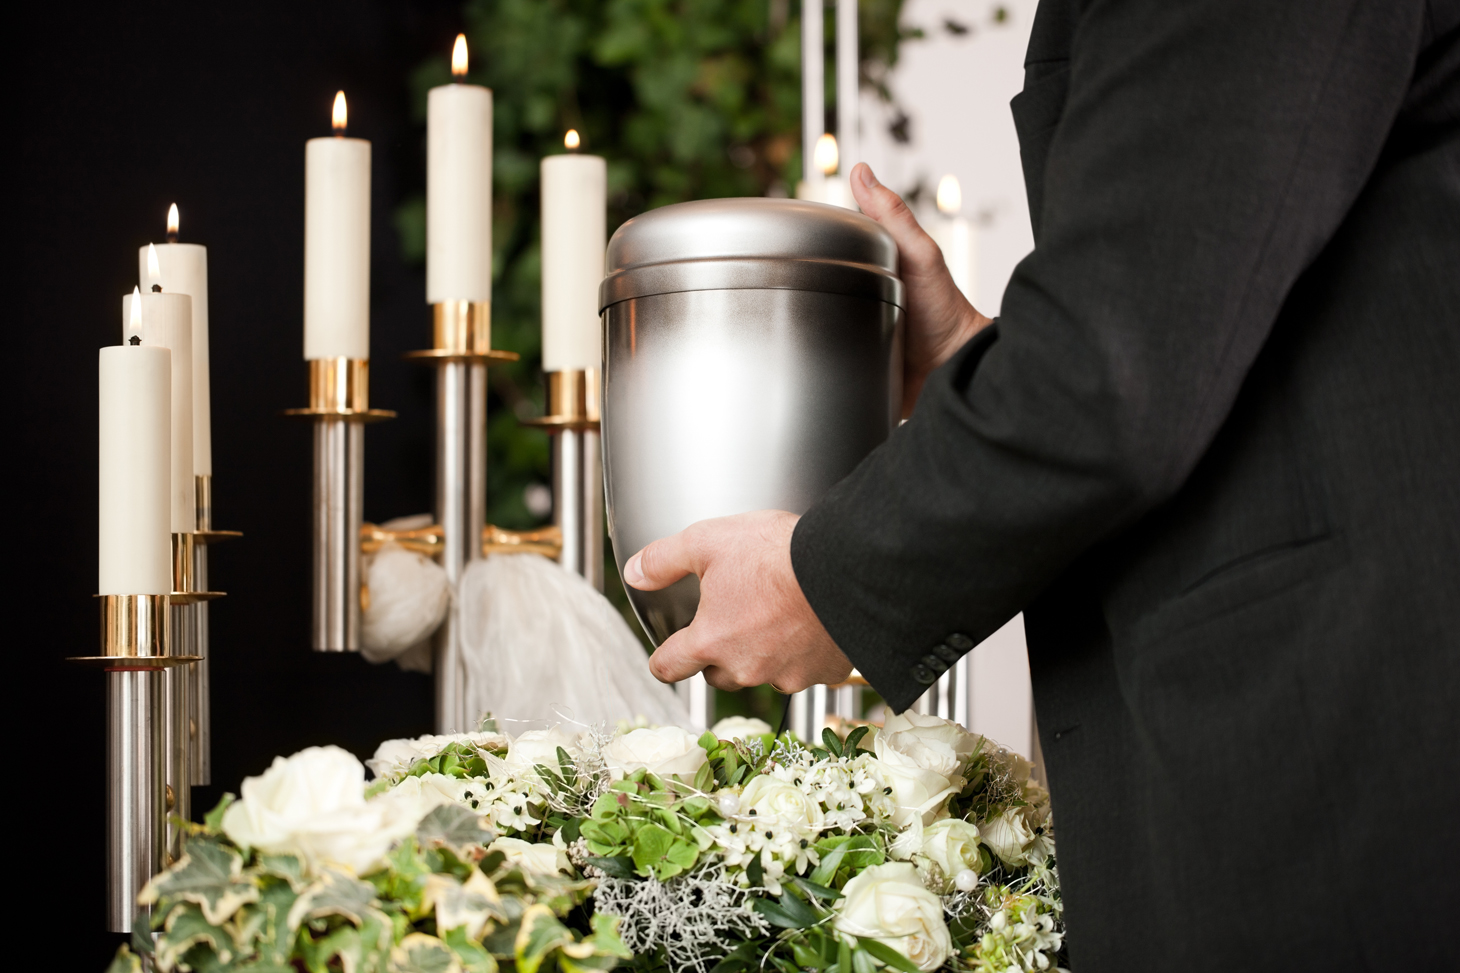 Eine Urne wird vor Kerzen und Blumenschmuck in der Hand gehalten.